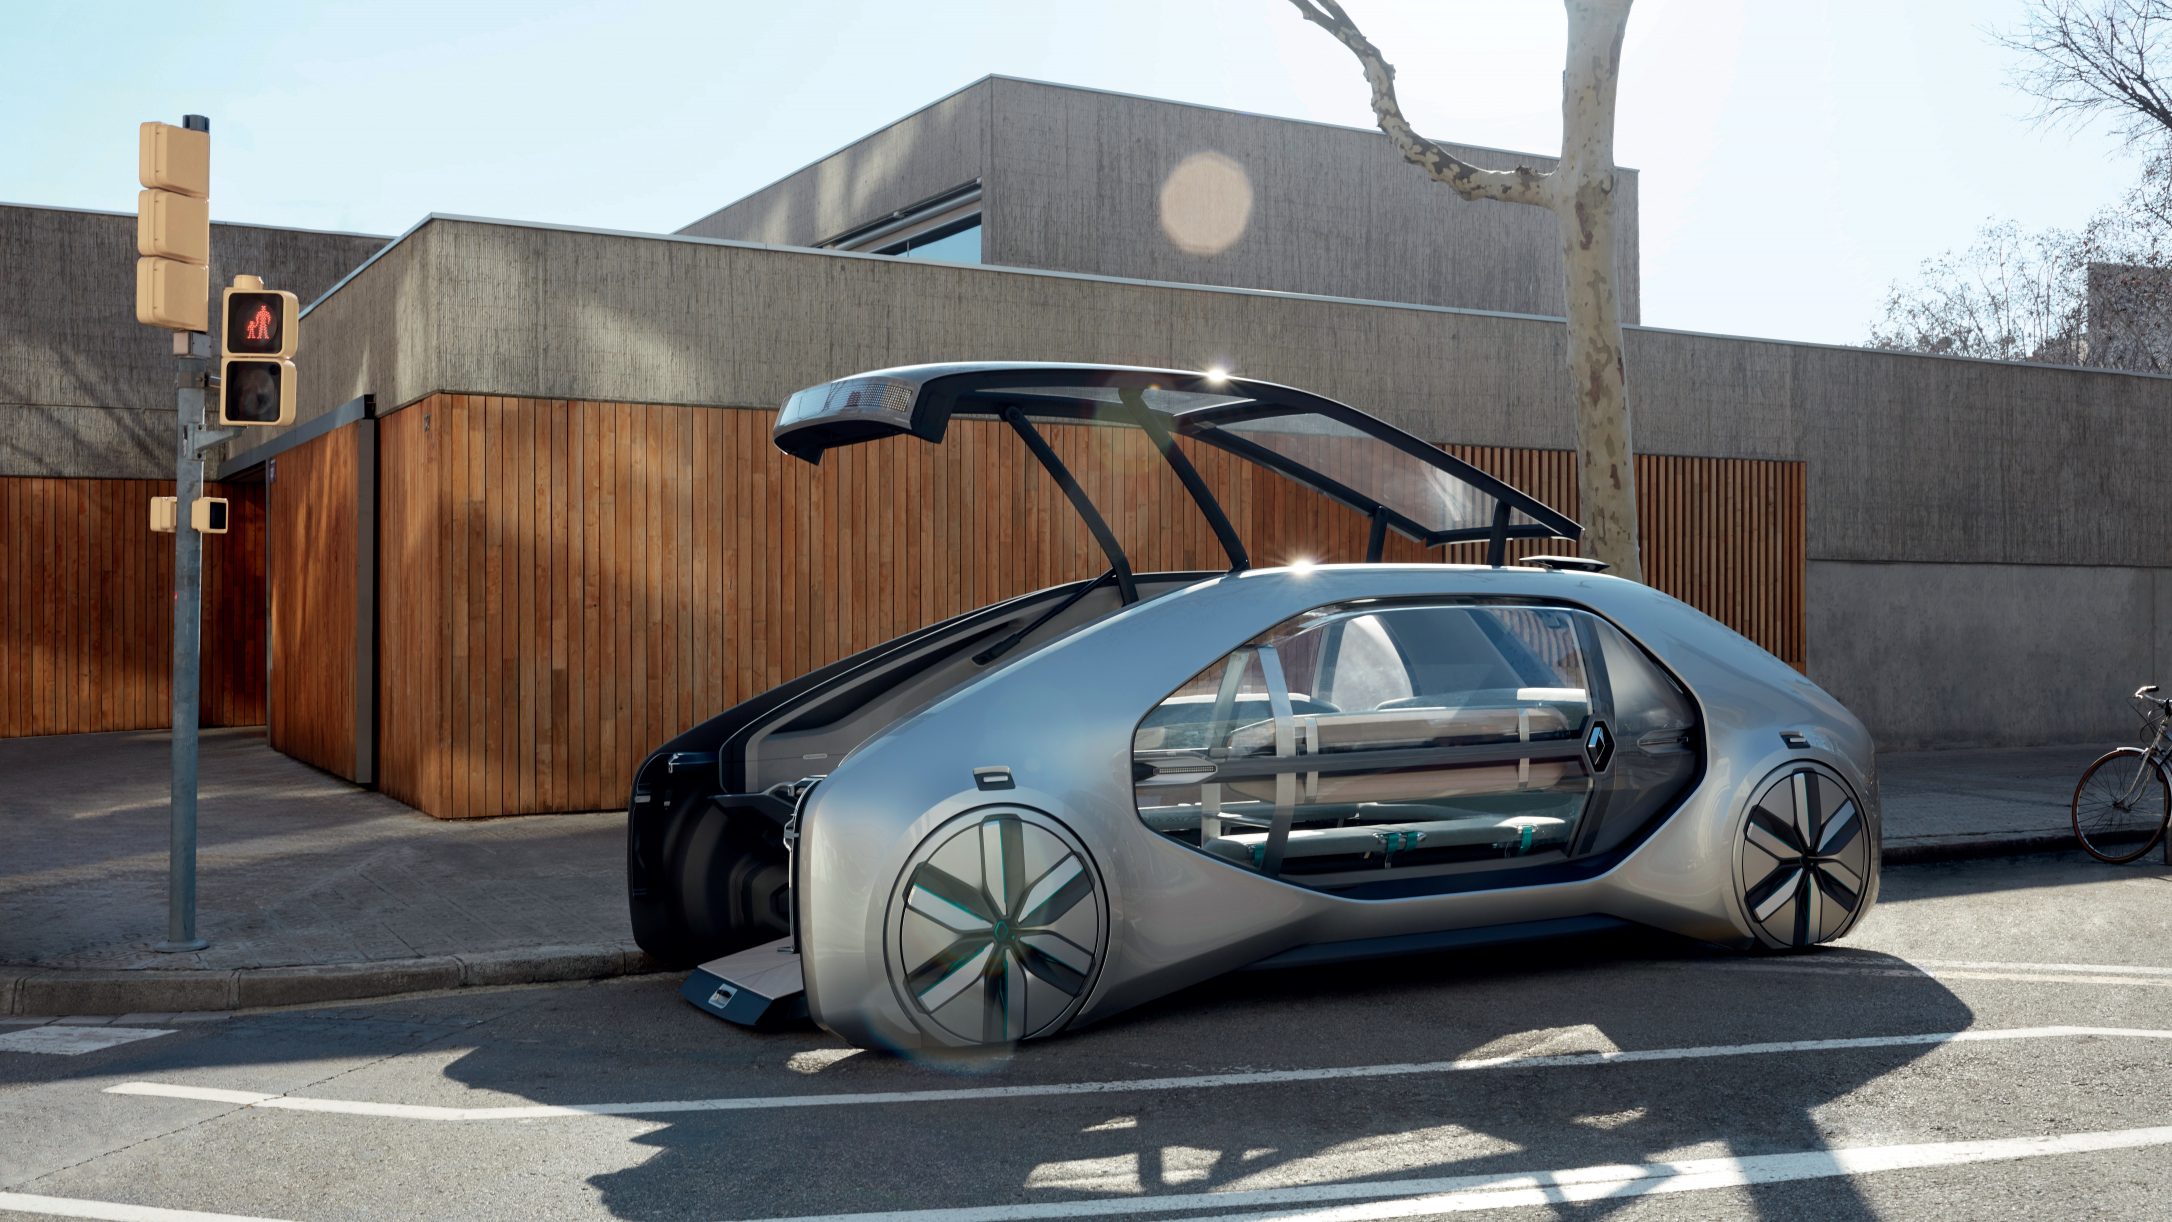 Renault unveils EZGO, a level 4 autonomous ridesharing electric city car concept for 2022